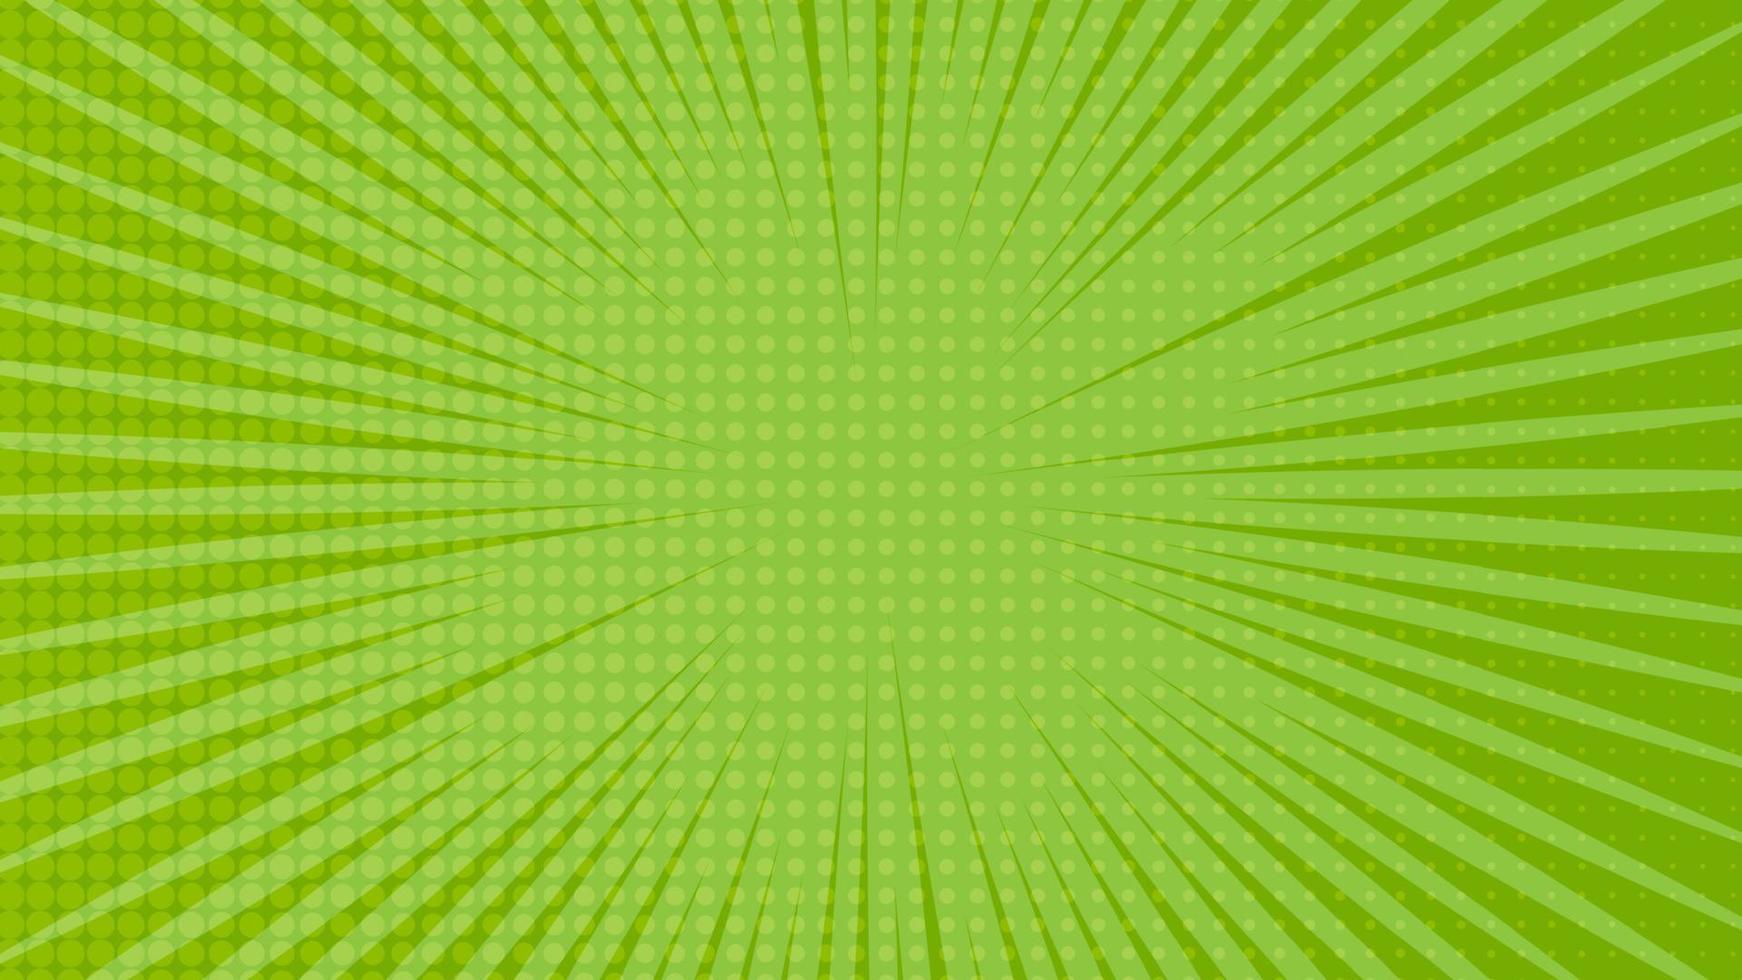 groen grappig boek bladzijde achtergrond in knal kunst stijl met leeg ruimte. sjabloon met stralen, dots en halftone effect textuur. vector illustratie